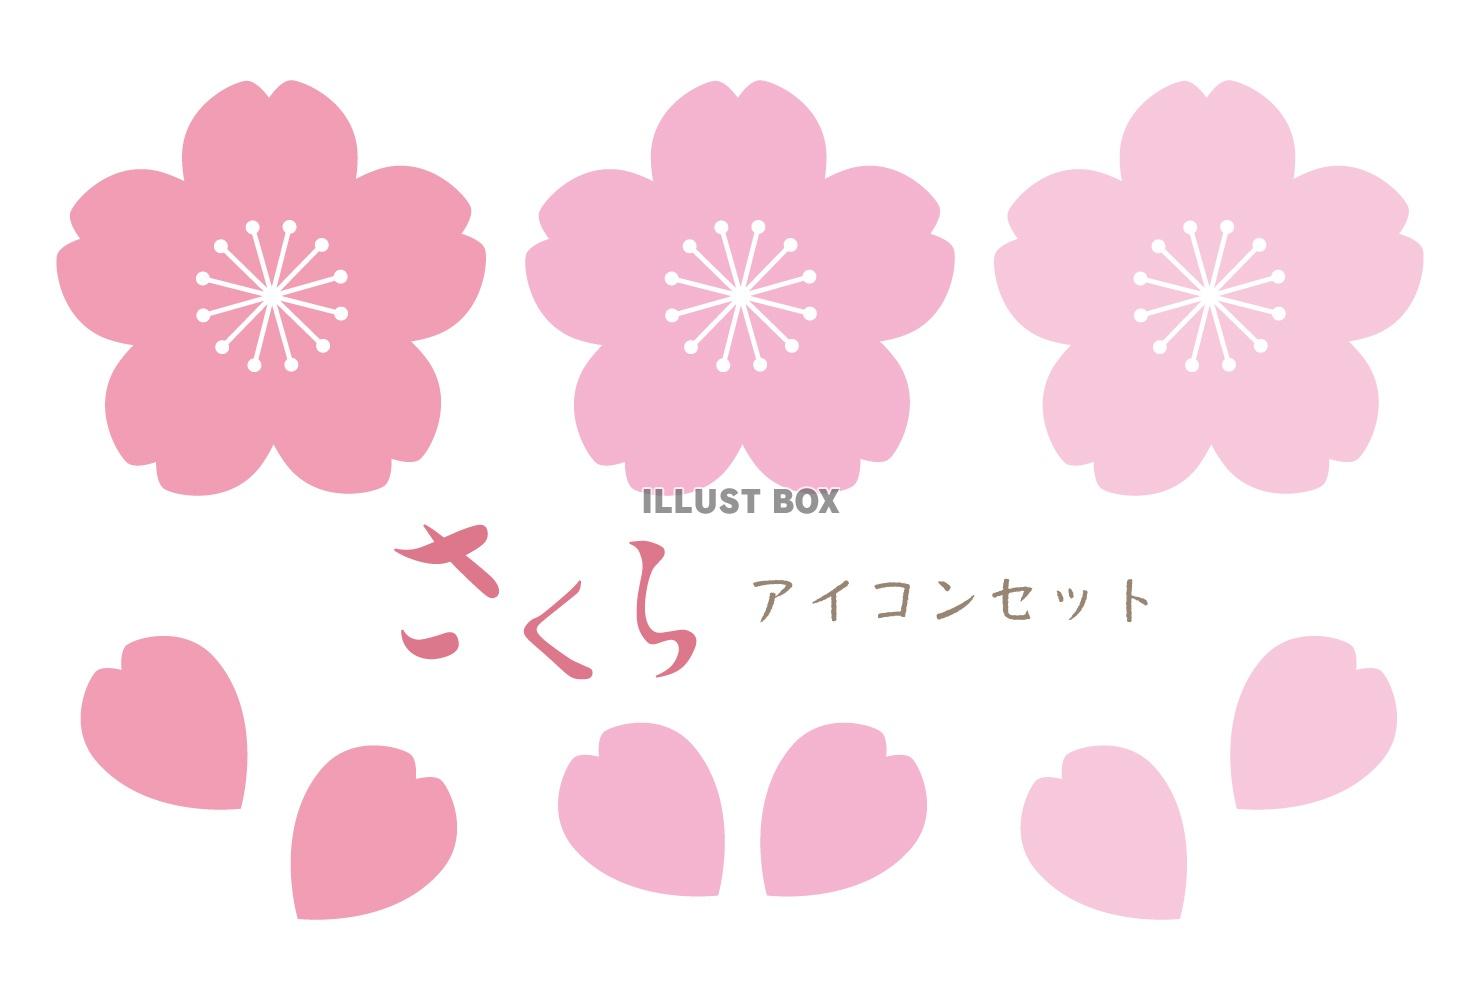 桜アイコンセット01